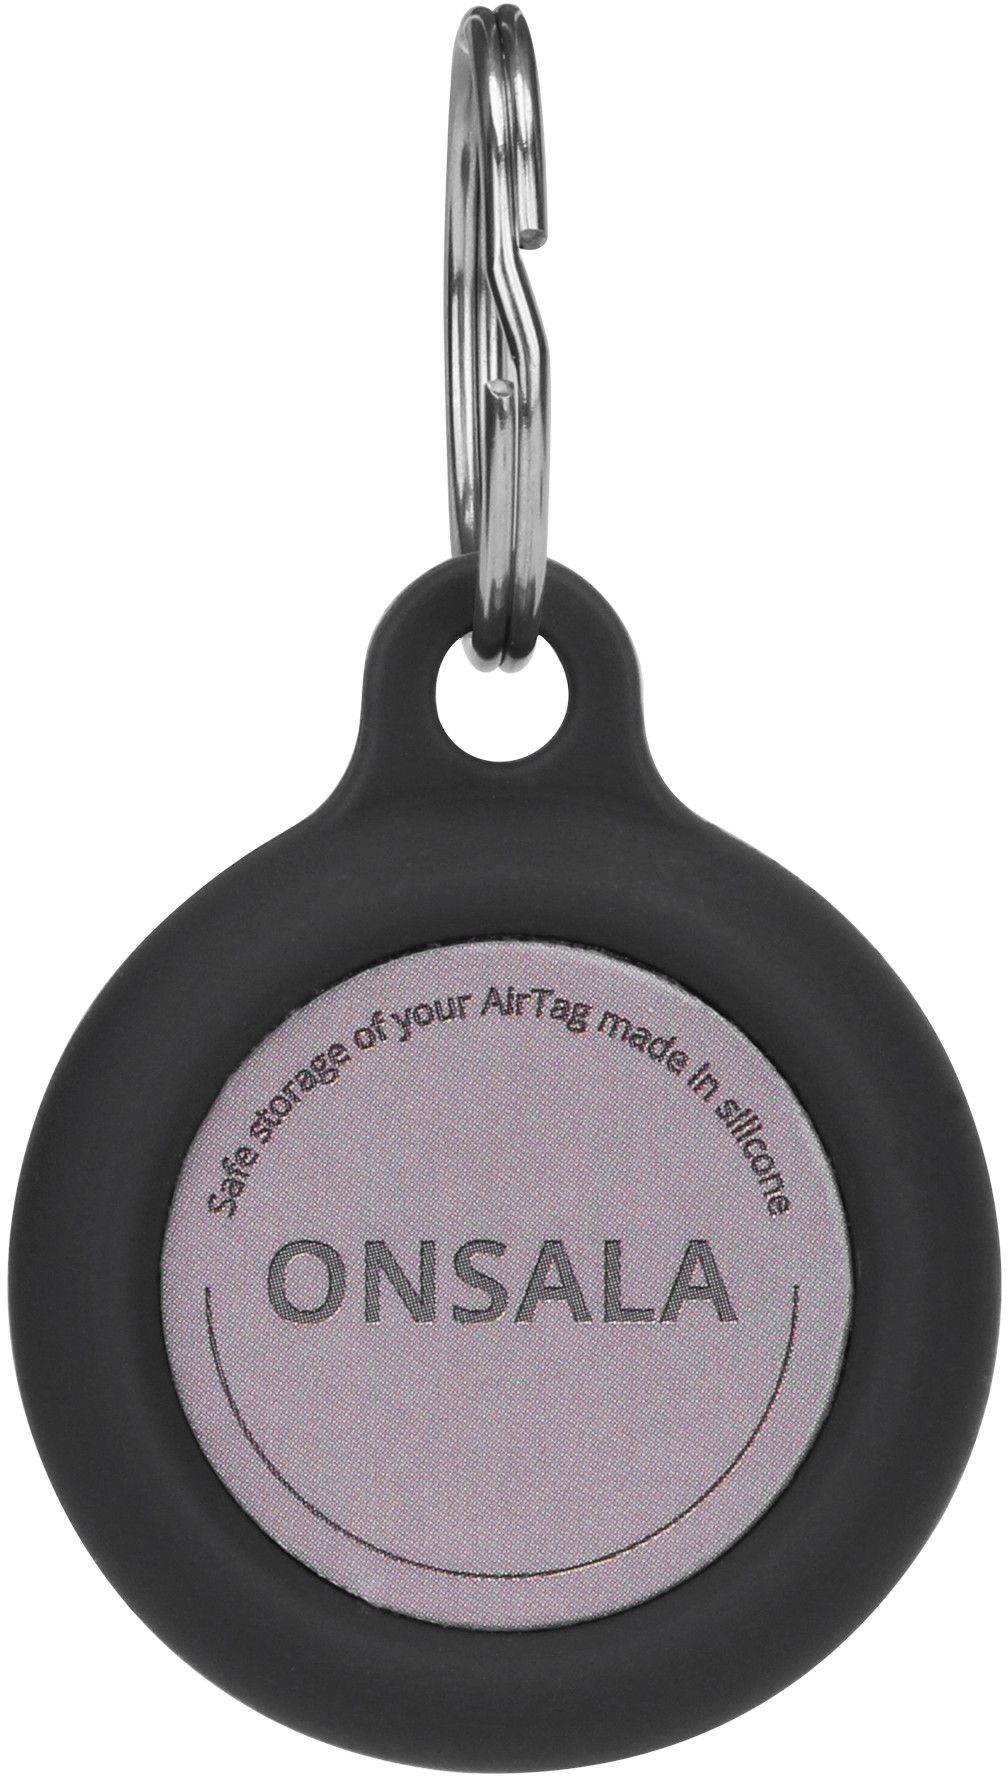 Gear Onsala silikonholder med nøkkelring